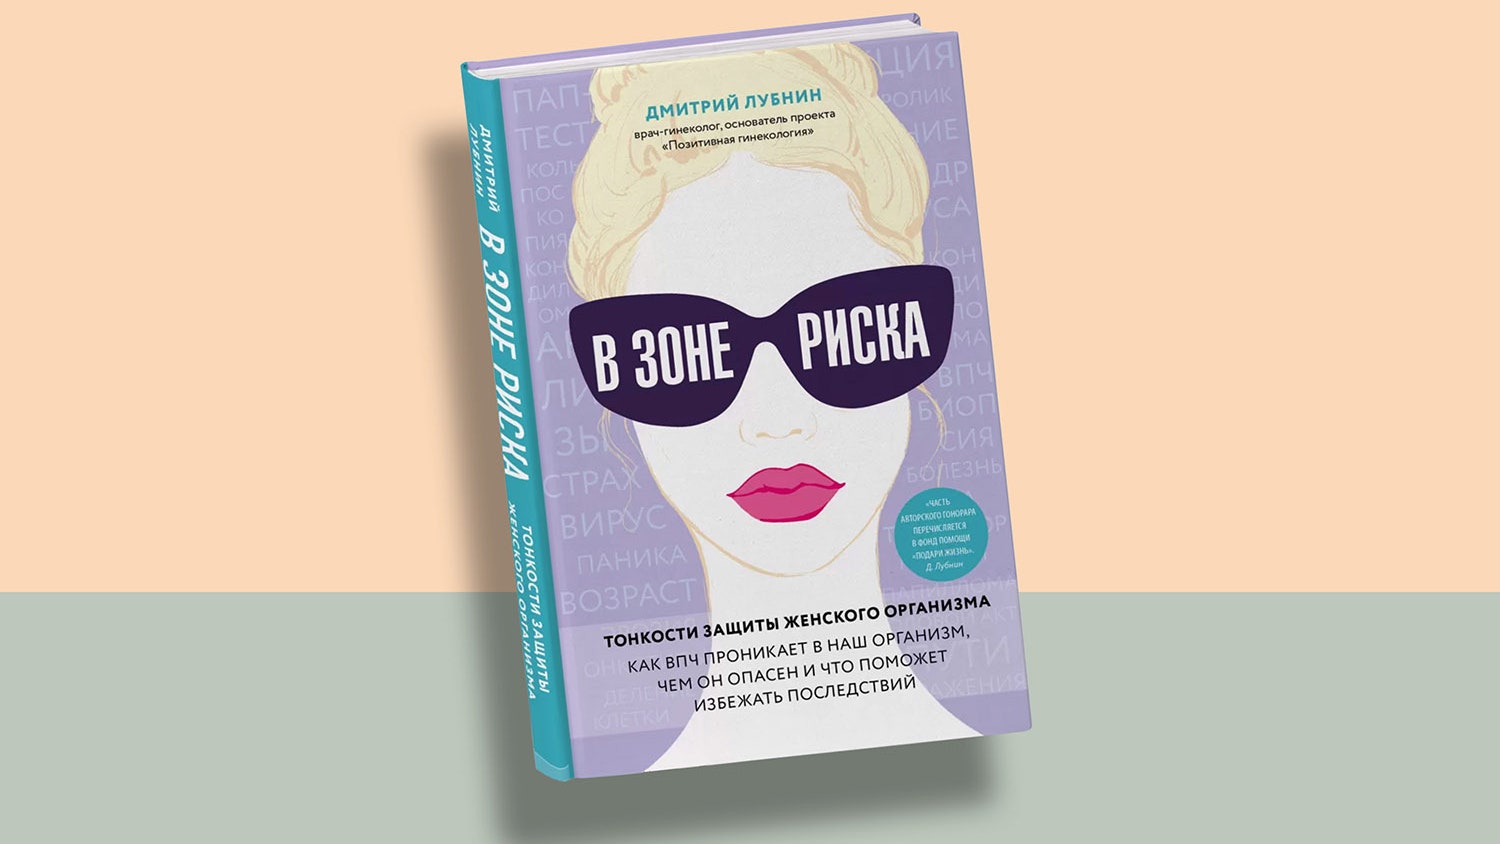 Отрывок из книги популярного гинеколога России о ВПЧ и раке шейки матки